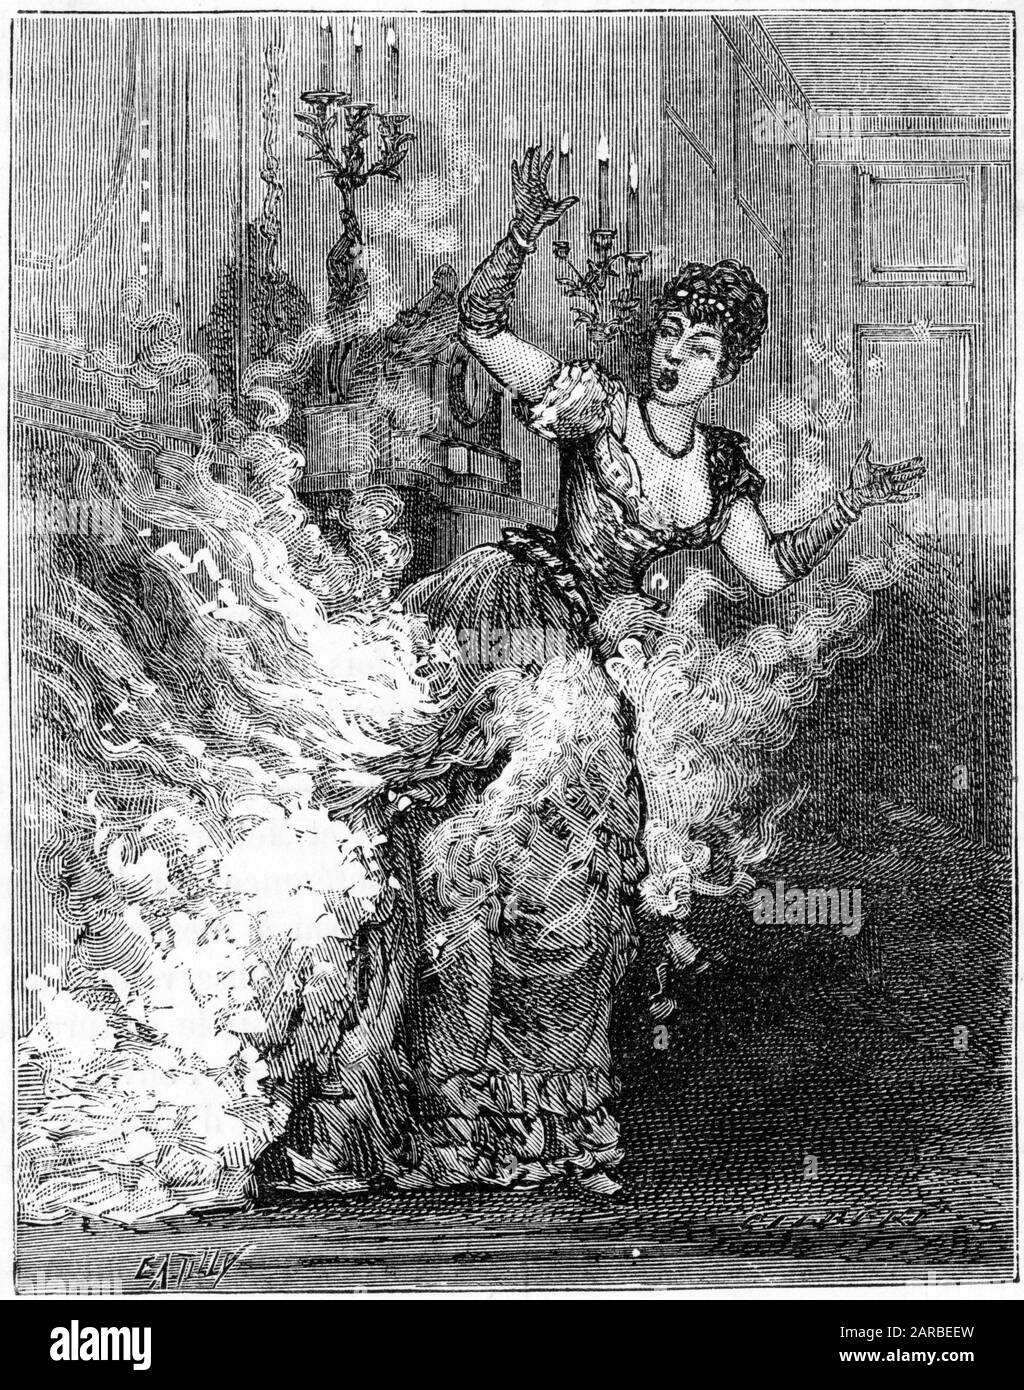 Abbildung 1 von 2. Schrecklicher Unfall - Lady ist abgewaschen, ihr Kleid hat Feuer gefangen und sie wird vom Inferno verscheucht. Diese Abbildung zeigt, dass, wenn man aufrecht steht und die Flammen schnell umkreisen und das Opfer umhüllen. Datum: 1886 Stockfoto